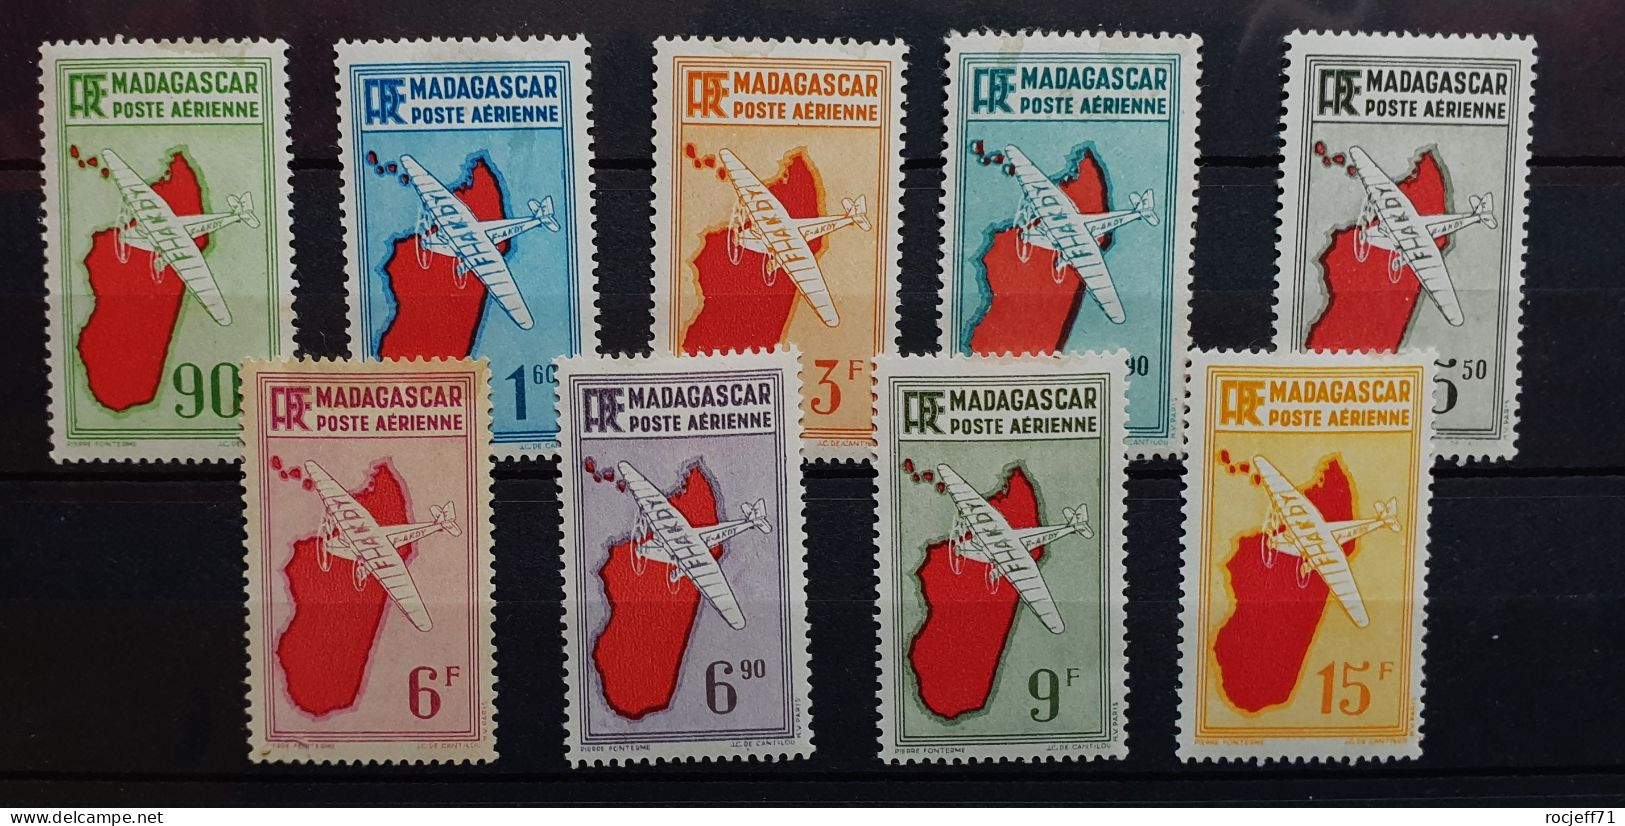 04 - 24 - Madagascar - Poste Aérienne N°16 à 24 * - MH - Série Complète - Airmail